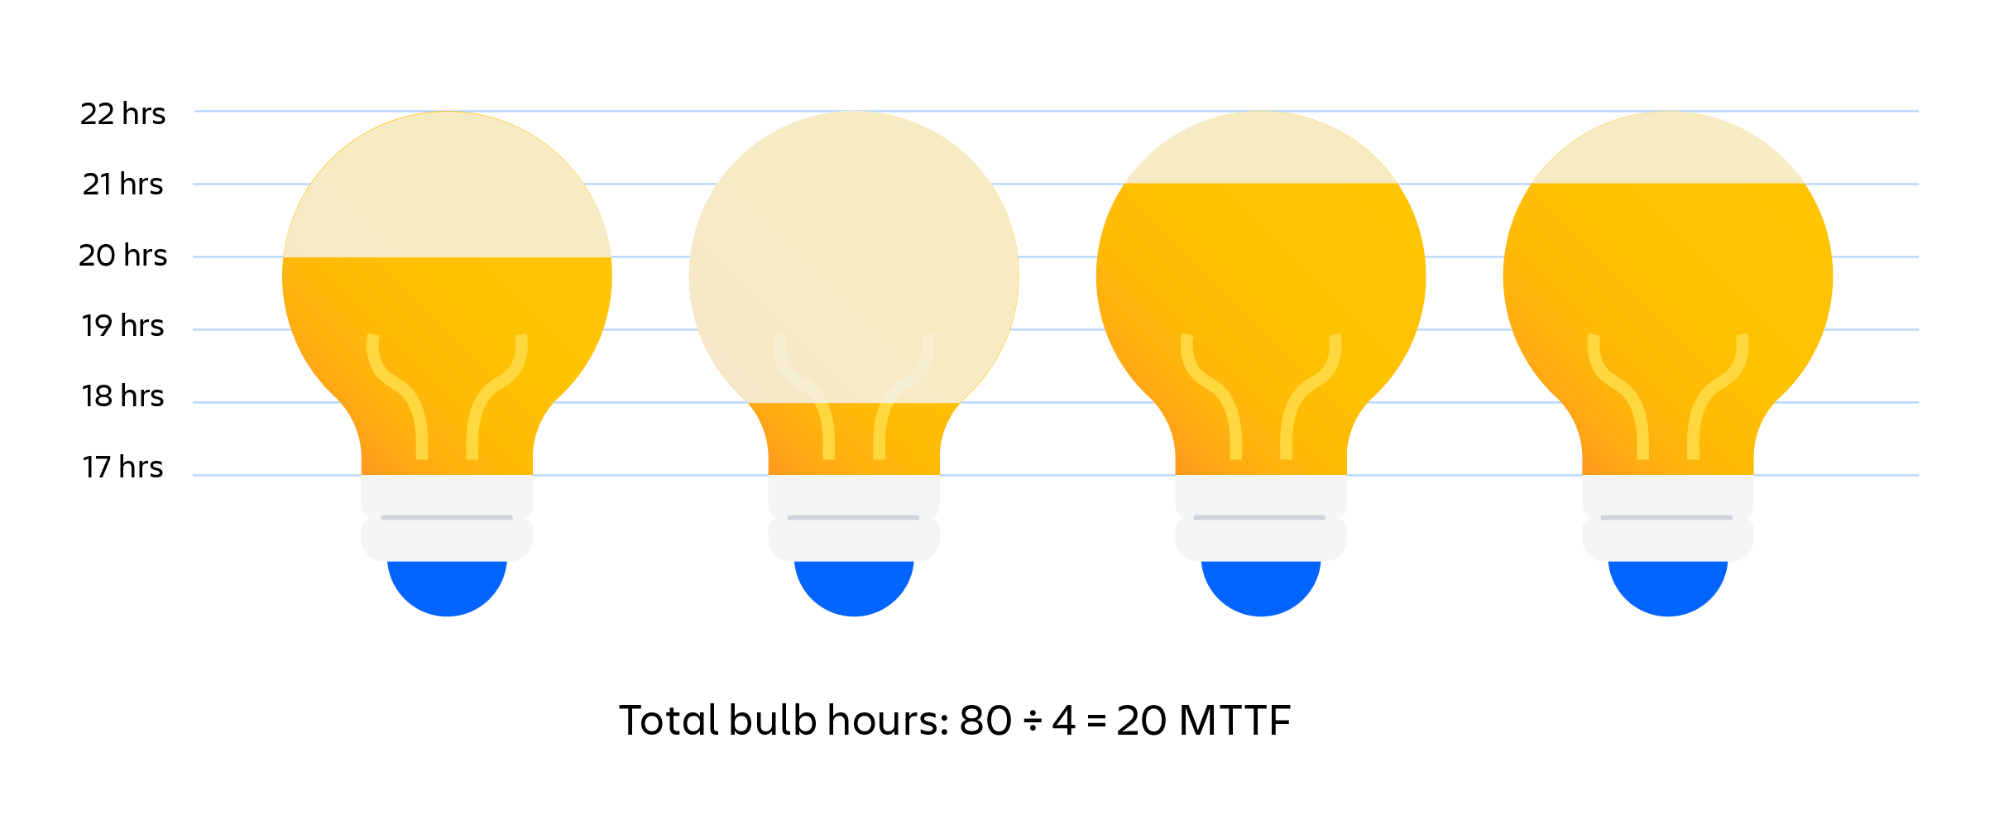 Wizualny przykład ustalania wskaźnika MTTF dla żarówek. Łączna liczba godzin pracy żarówek podzielona przez liczbę żarówek daje wskaźnik średniego czasu do wystąpienia awarii (MTTF).